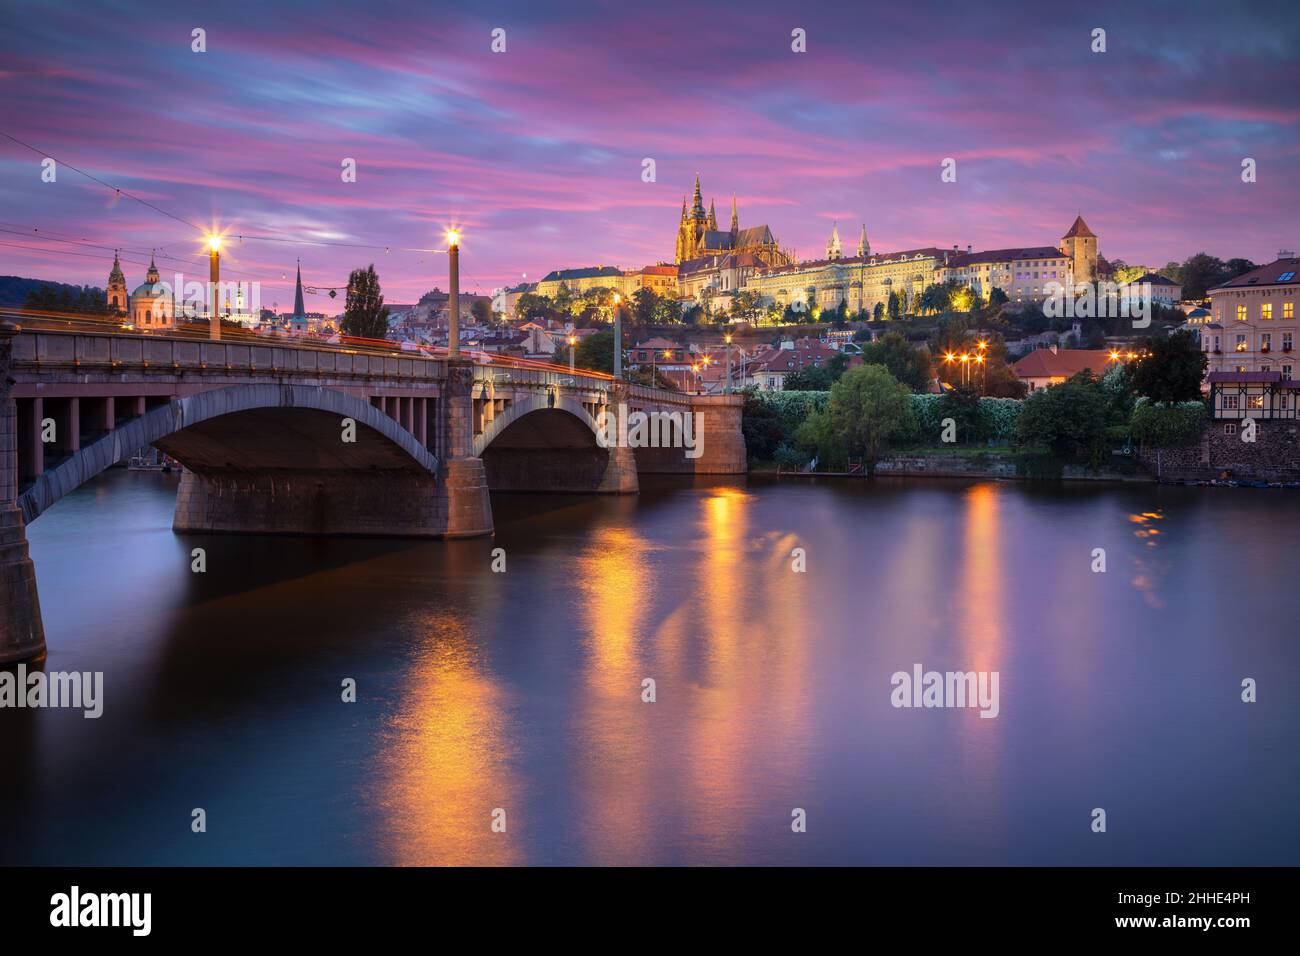 Prague, République tchèque.Image du paysage urbain de Prague, capitale de la République tchèque, avec la cathédrale Saint-Vitus et le pont Charles au-dessus de la Vltava Banque D'Images